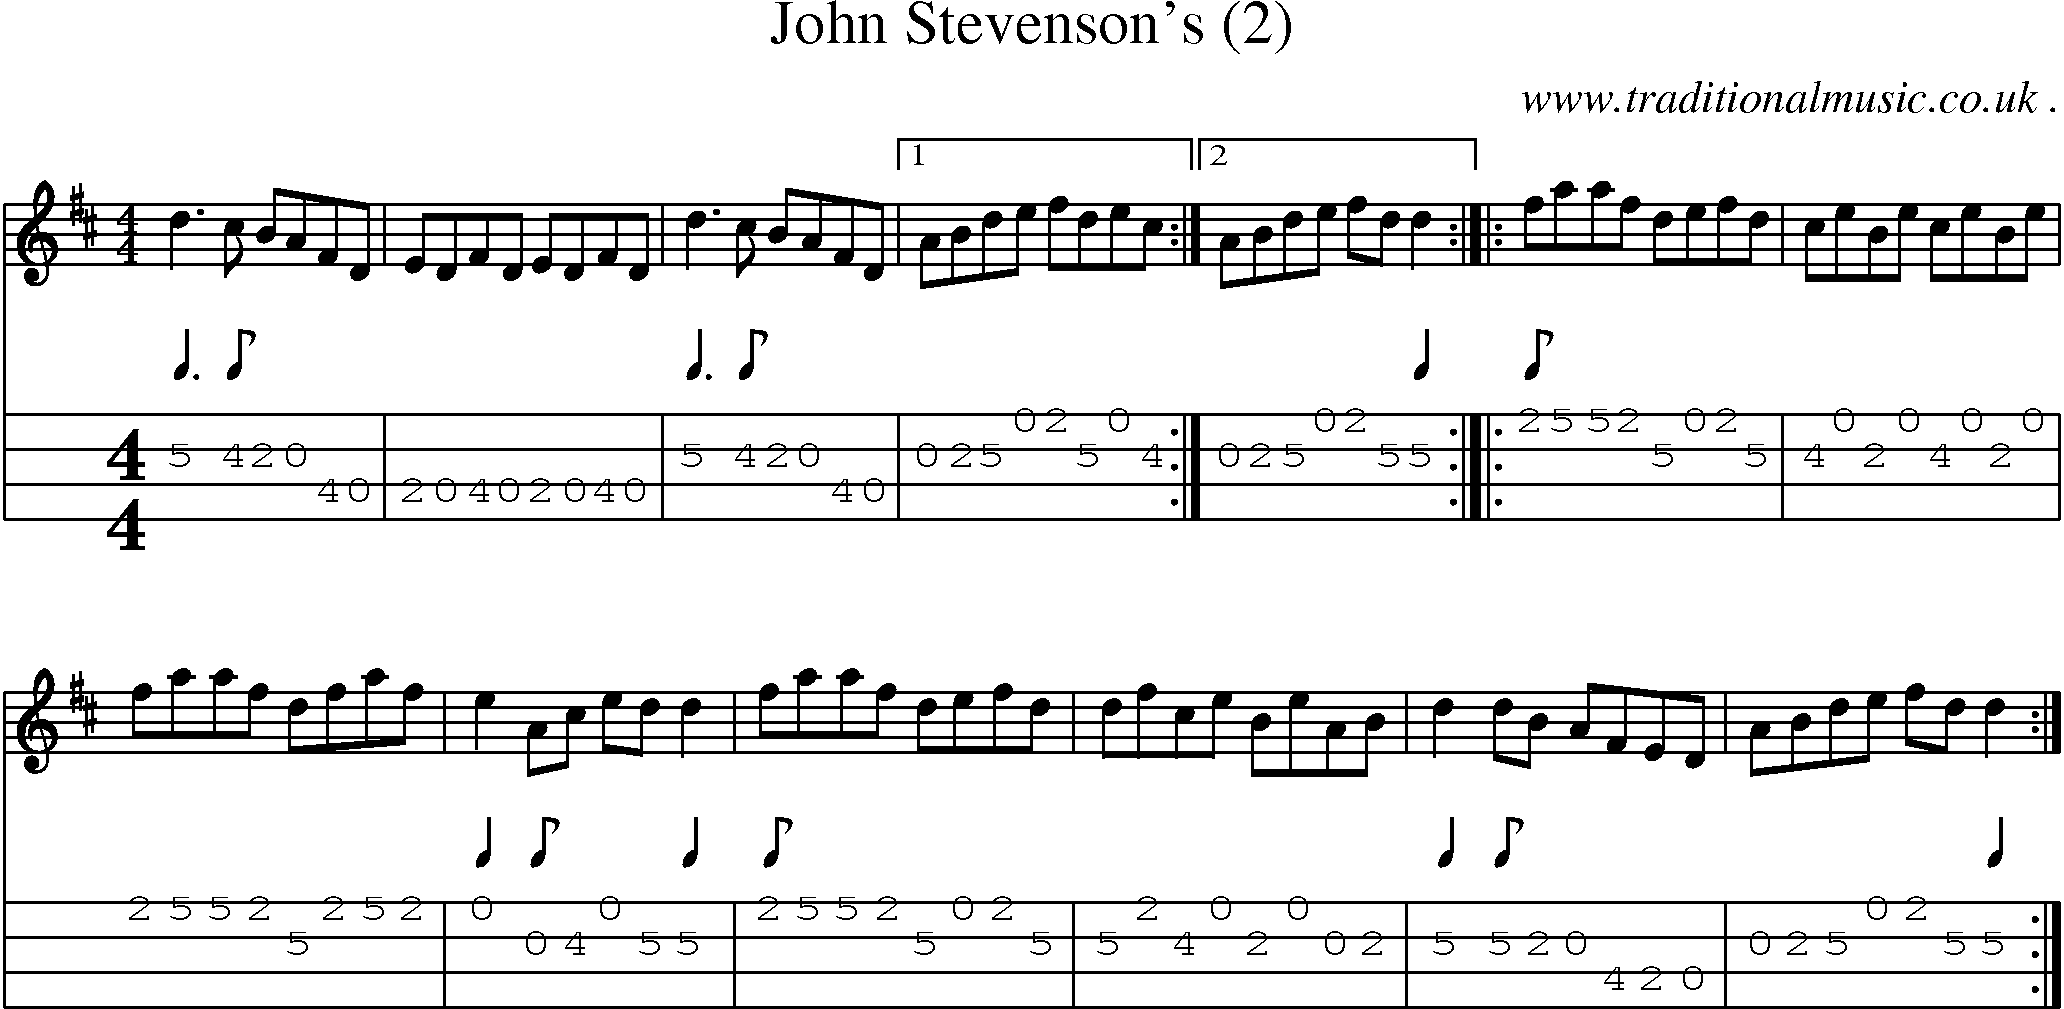 Sheet-Music and Mandolin Tabs for John Stevensons (2)